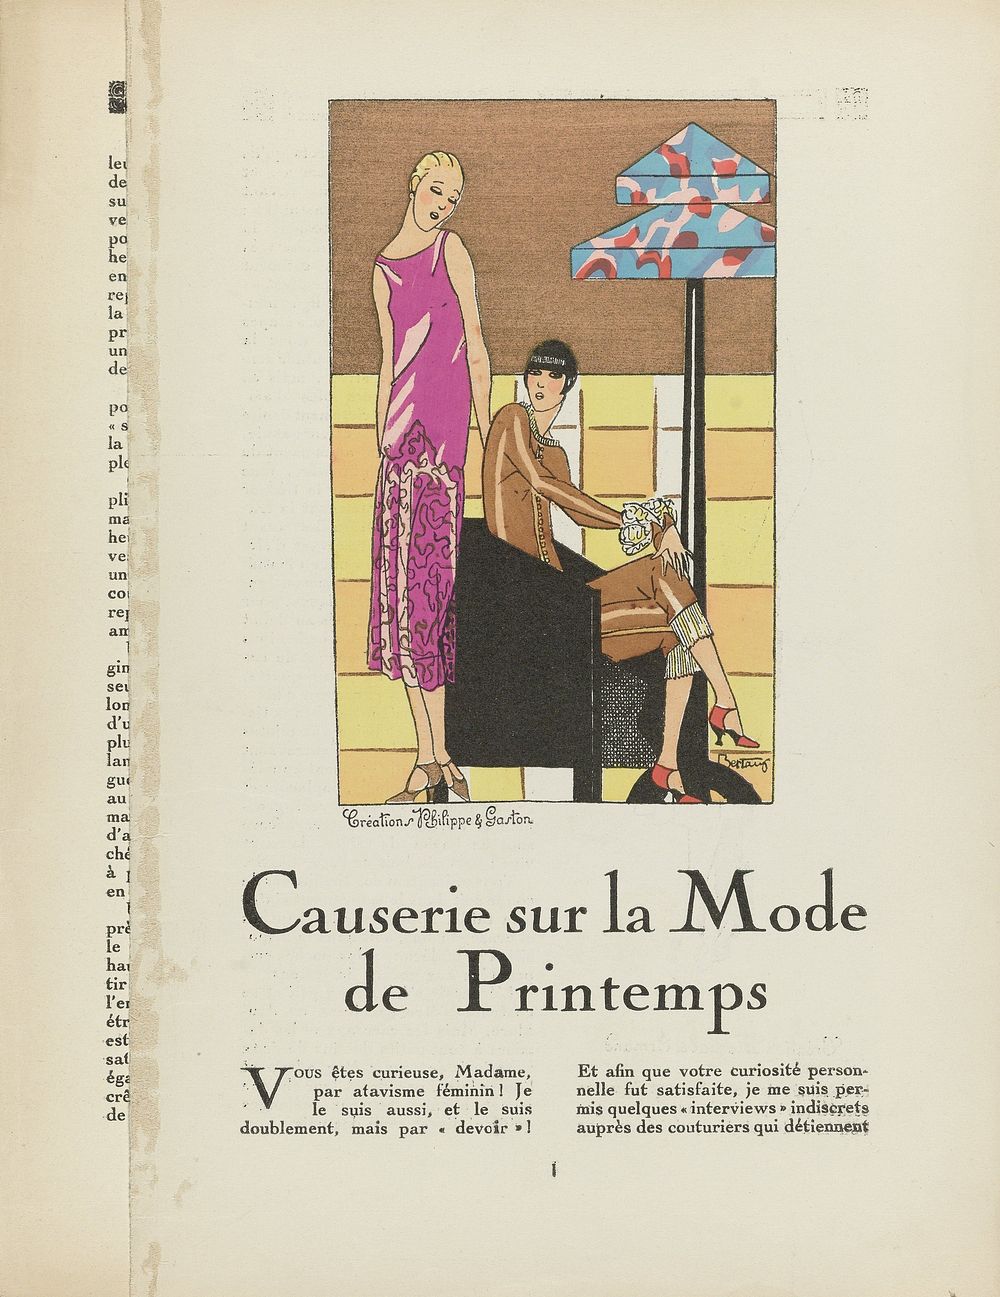 Très Parisien, 1927 : Créations Philippe & Gaston / Causerie sur la Mode de Printemps (...) (1927) by Bertaux, anonymous…